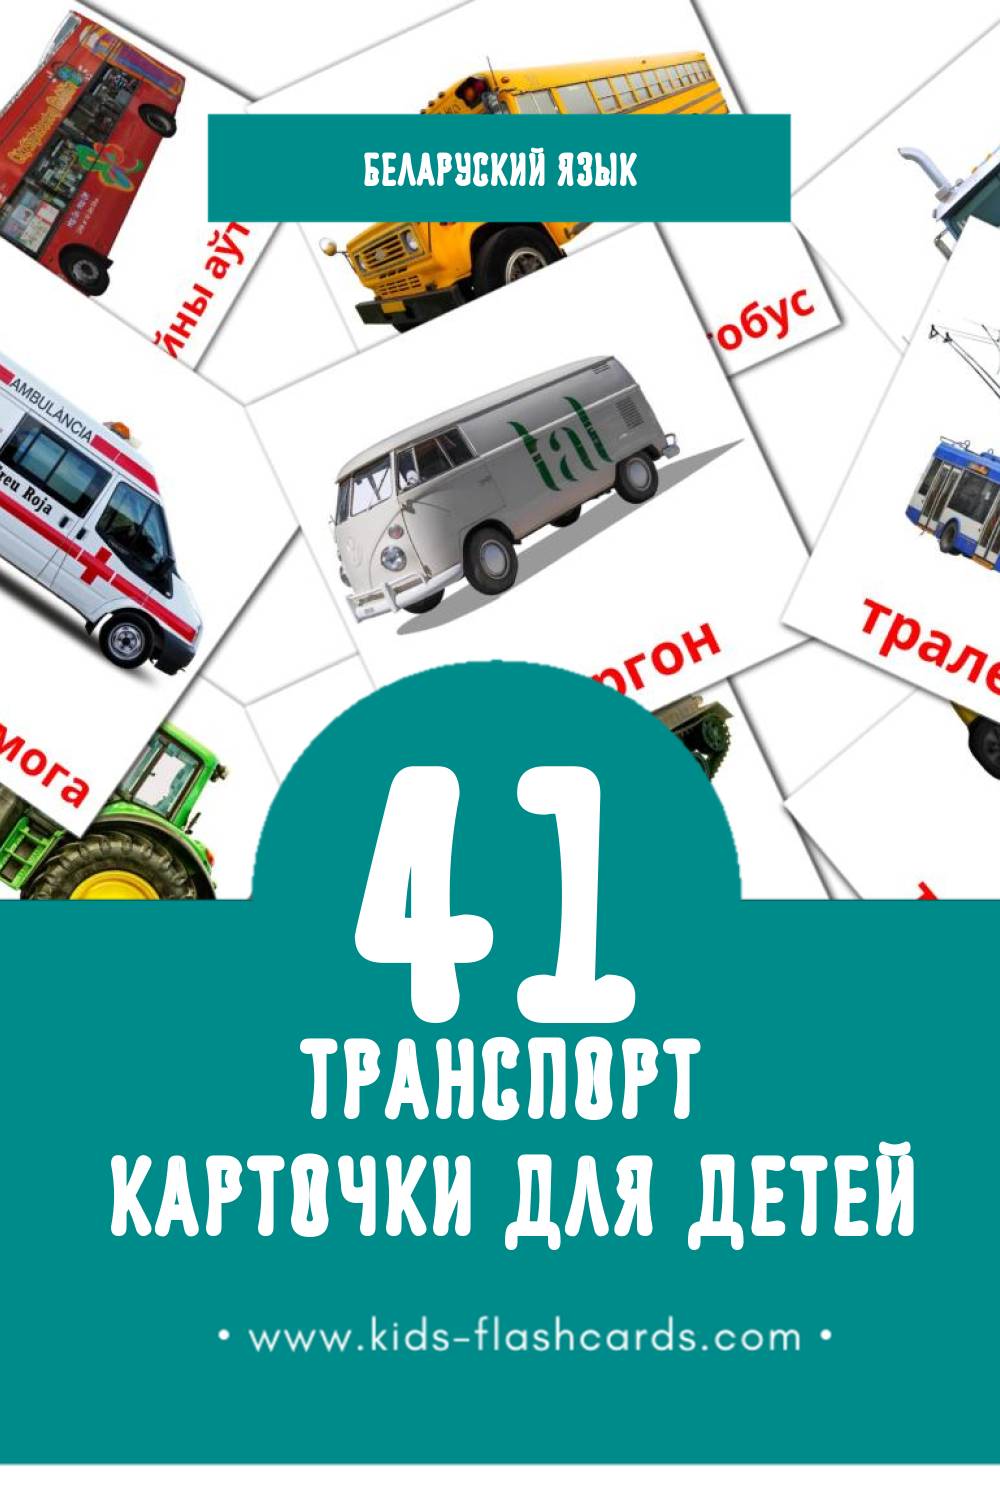 "Транспарт" - Визуальный Беларуском Словарь для Малышей (41 картинок)